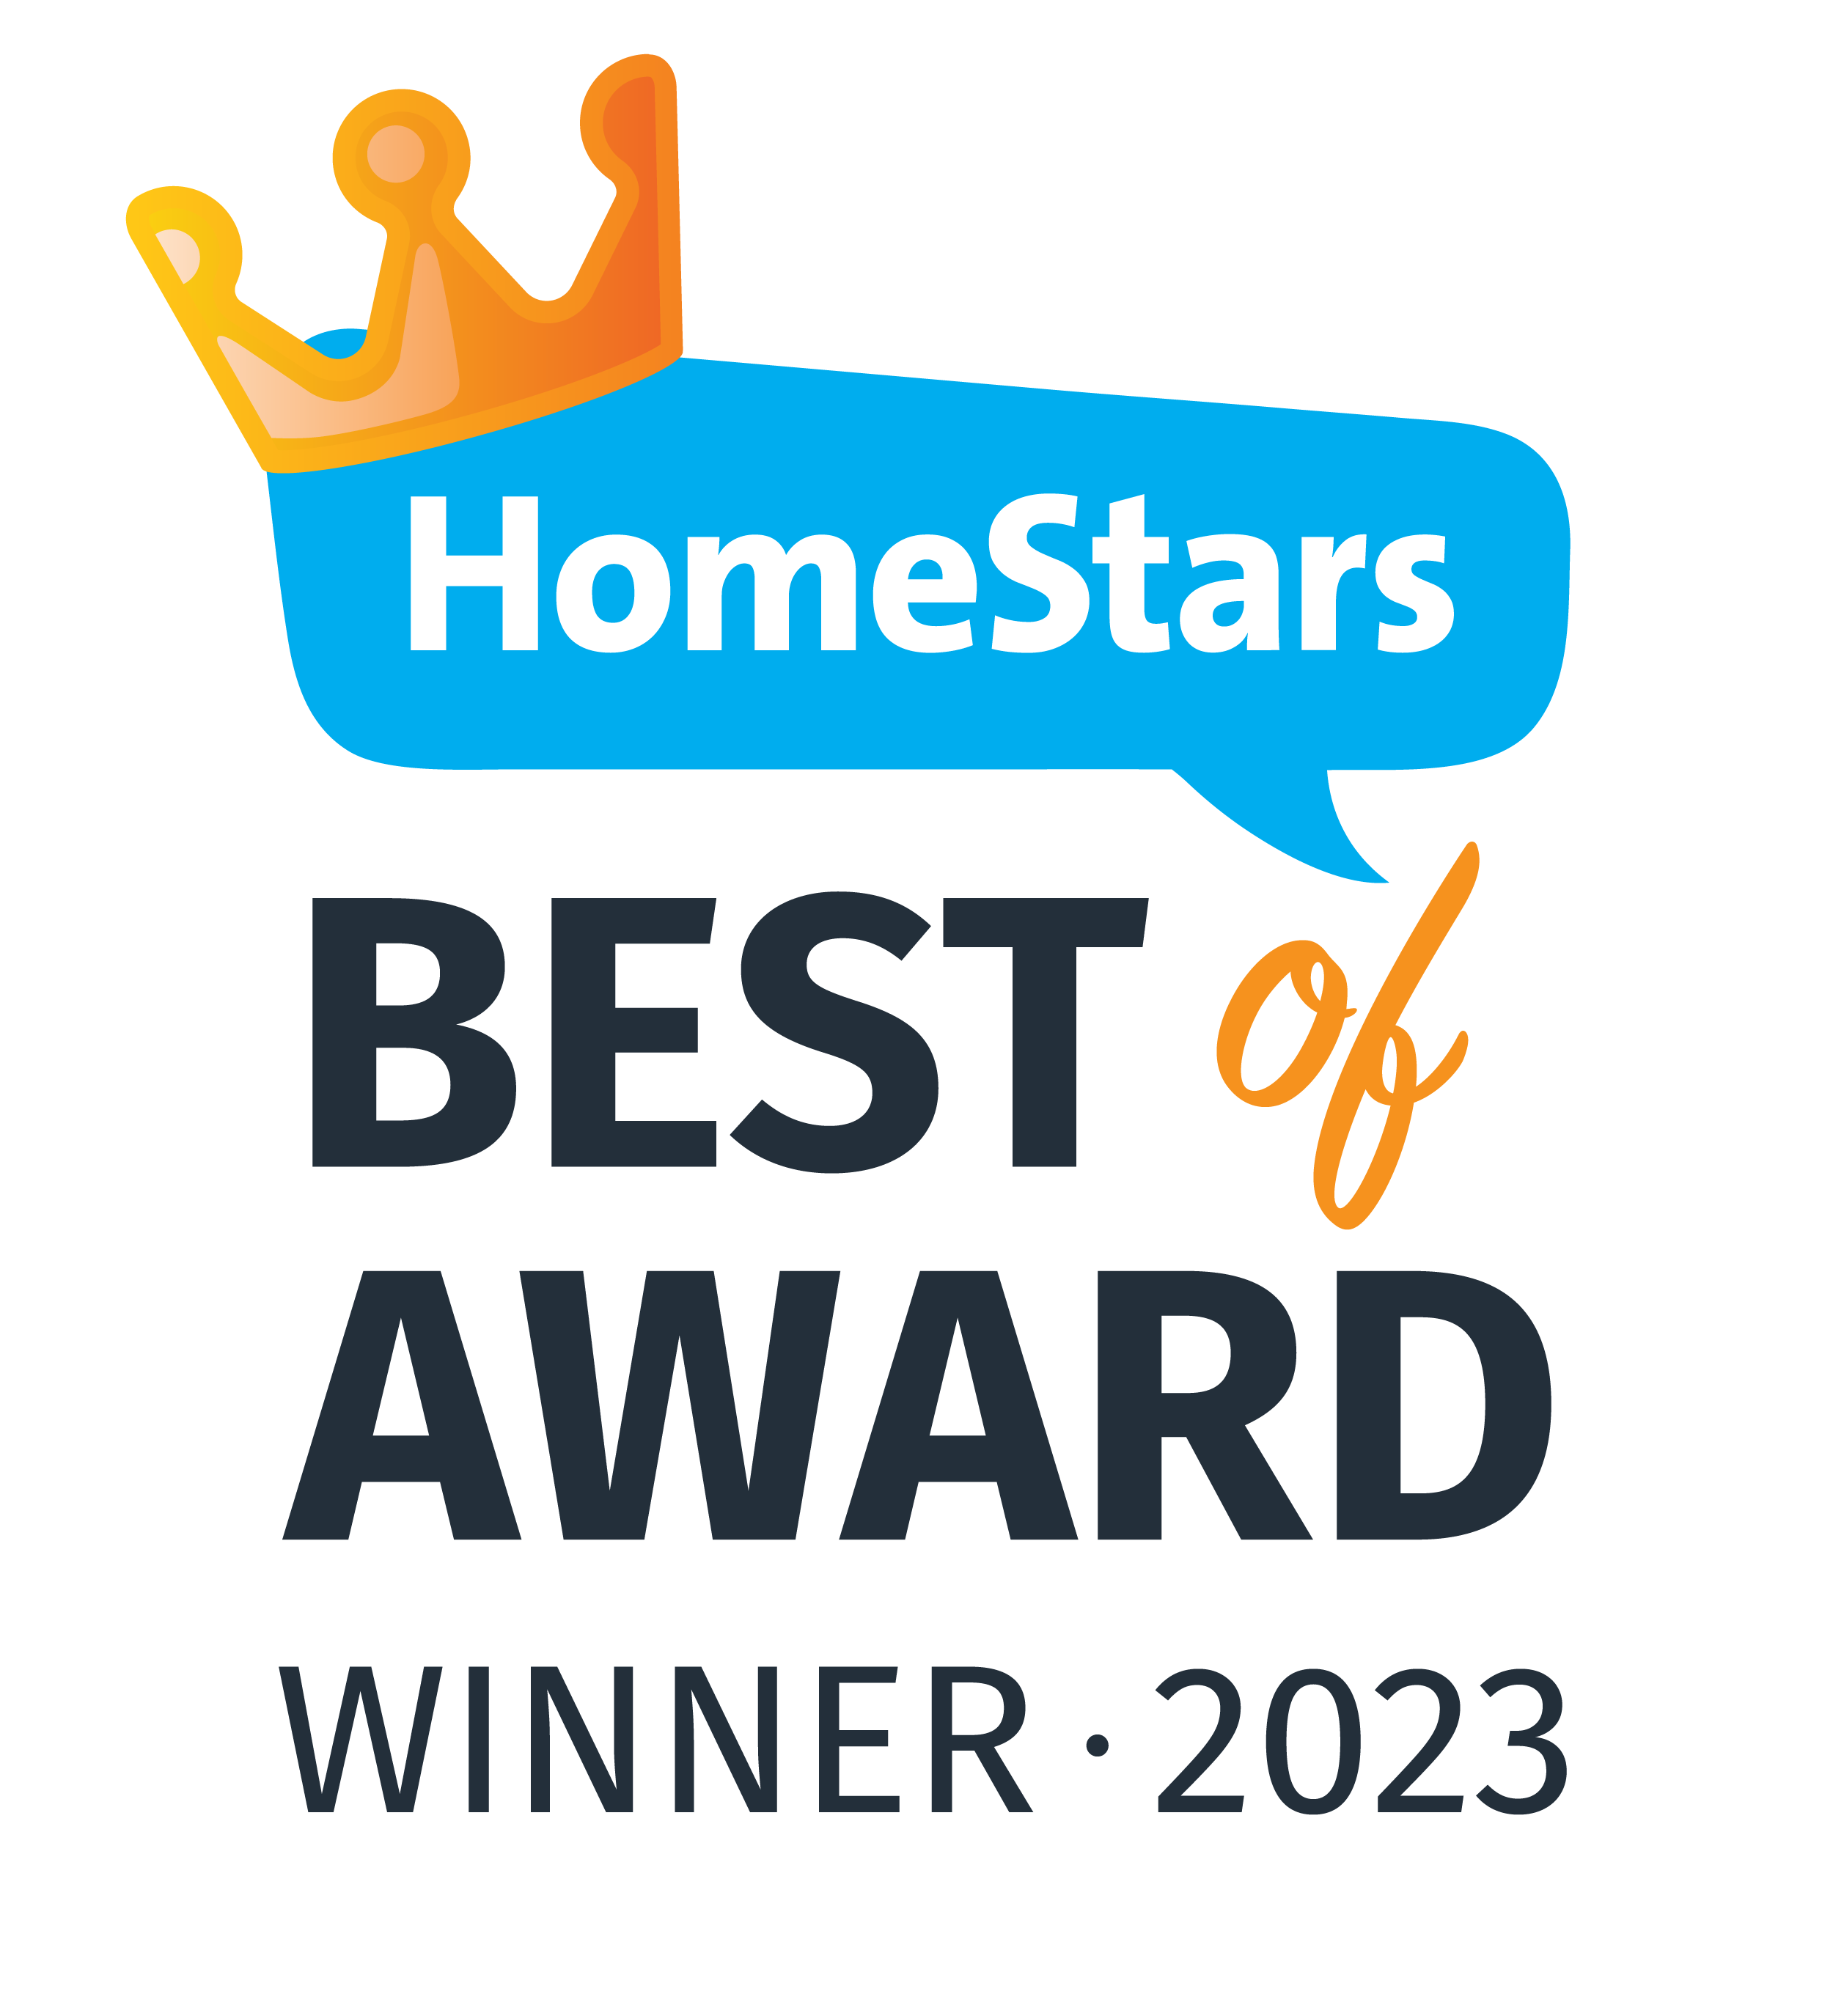 Homestars Best of Award Winner 2023, 2022, 2021 Bathroom Renovations in Toronto